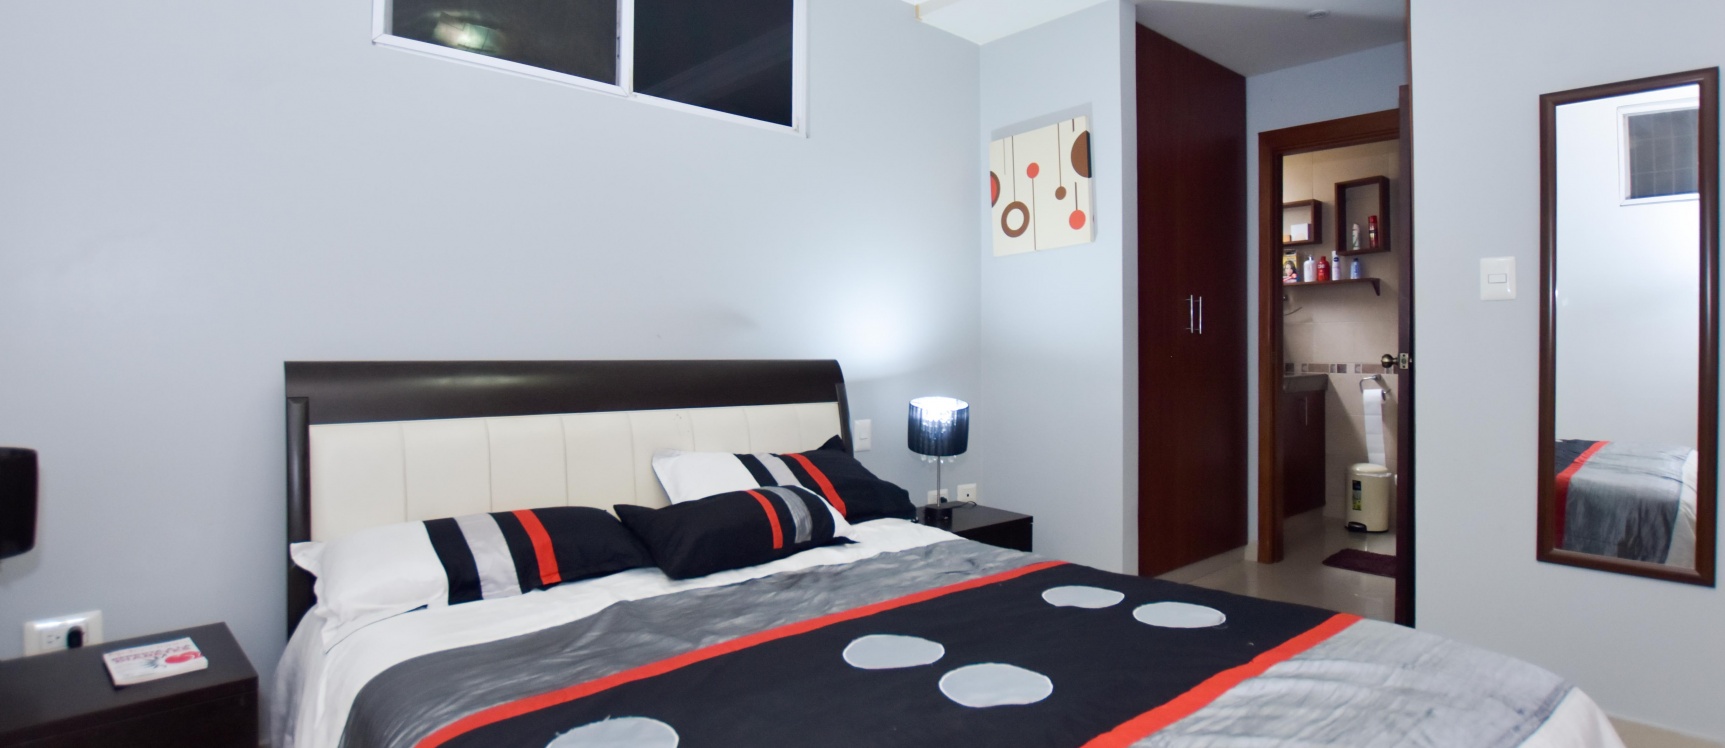 GeoBienes - Suite amoblada en alquiler ubicada en Kennedy Norte - Plusvalia Guayaquil Casas de venta y alquiler Inmobiliaria Ecuador